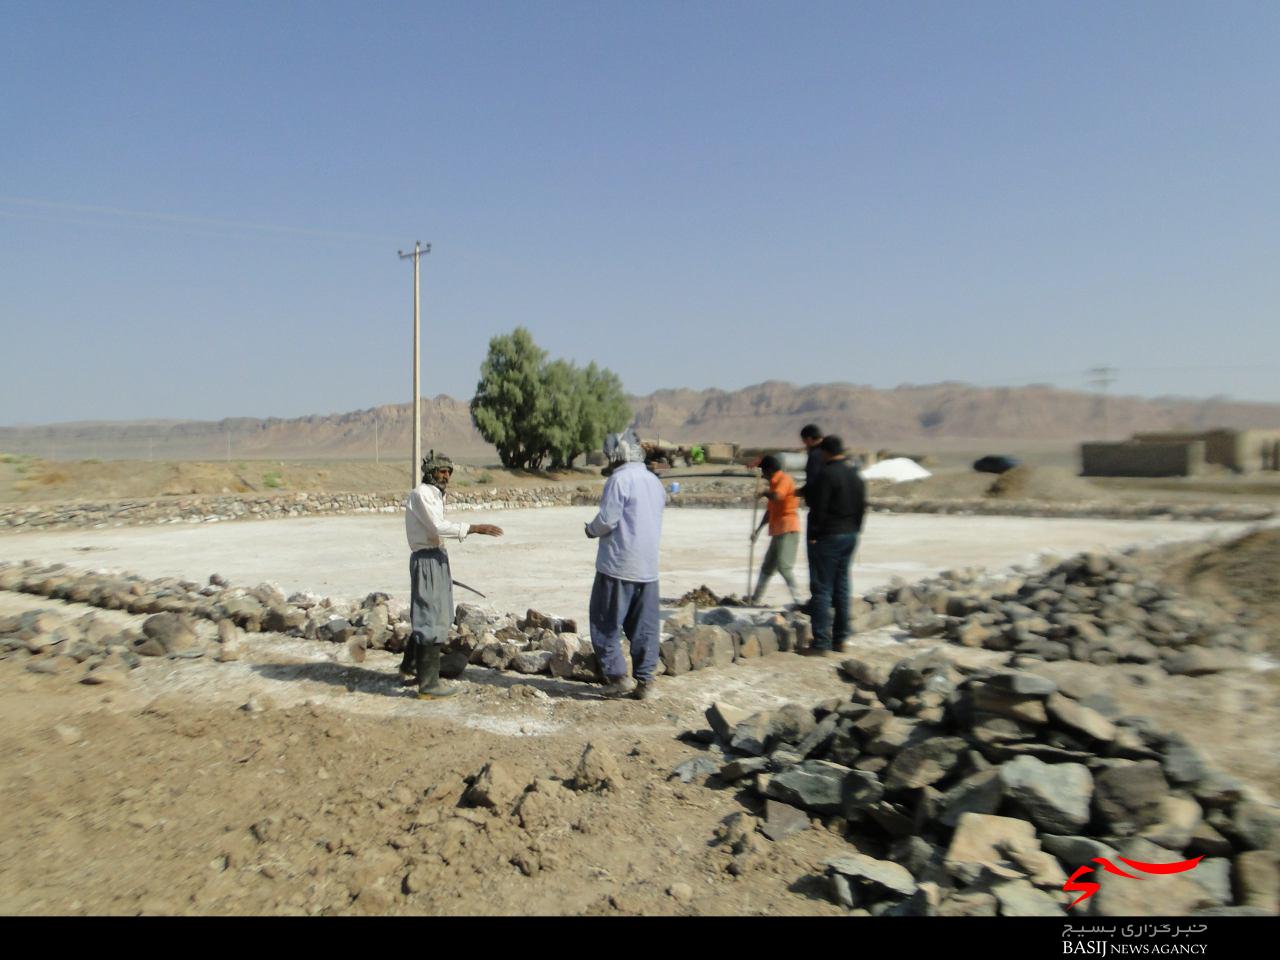 راه روشن محرومیت زدایی از نیمه گذشت/ پیشرفت 70درصدی پروژه های عمرانی قرارگاه پیشرفت و آبادانی در خراسان جنوبی